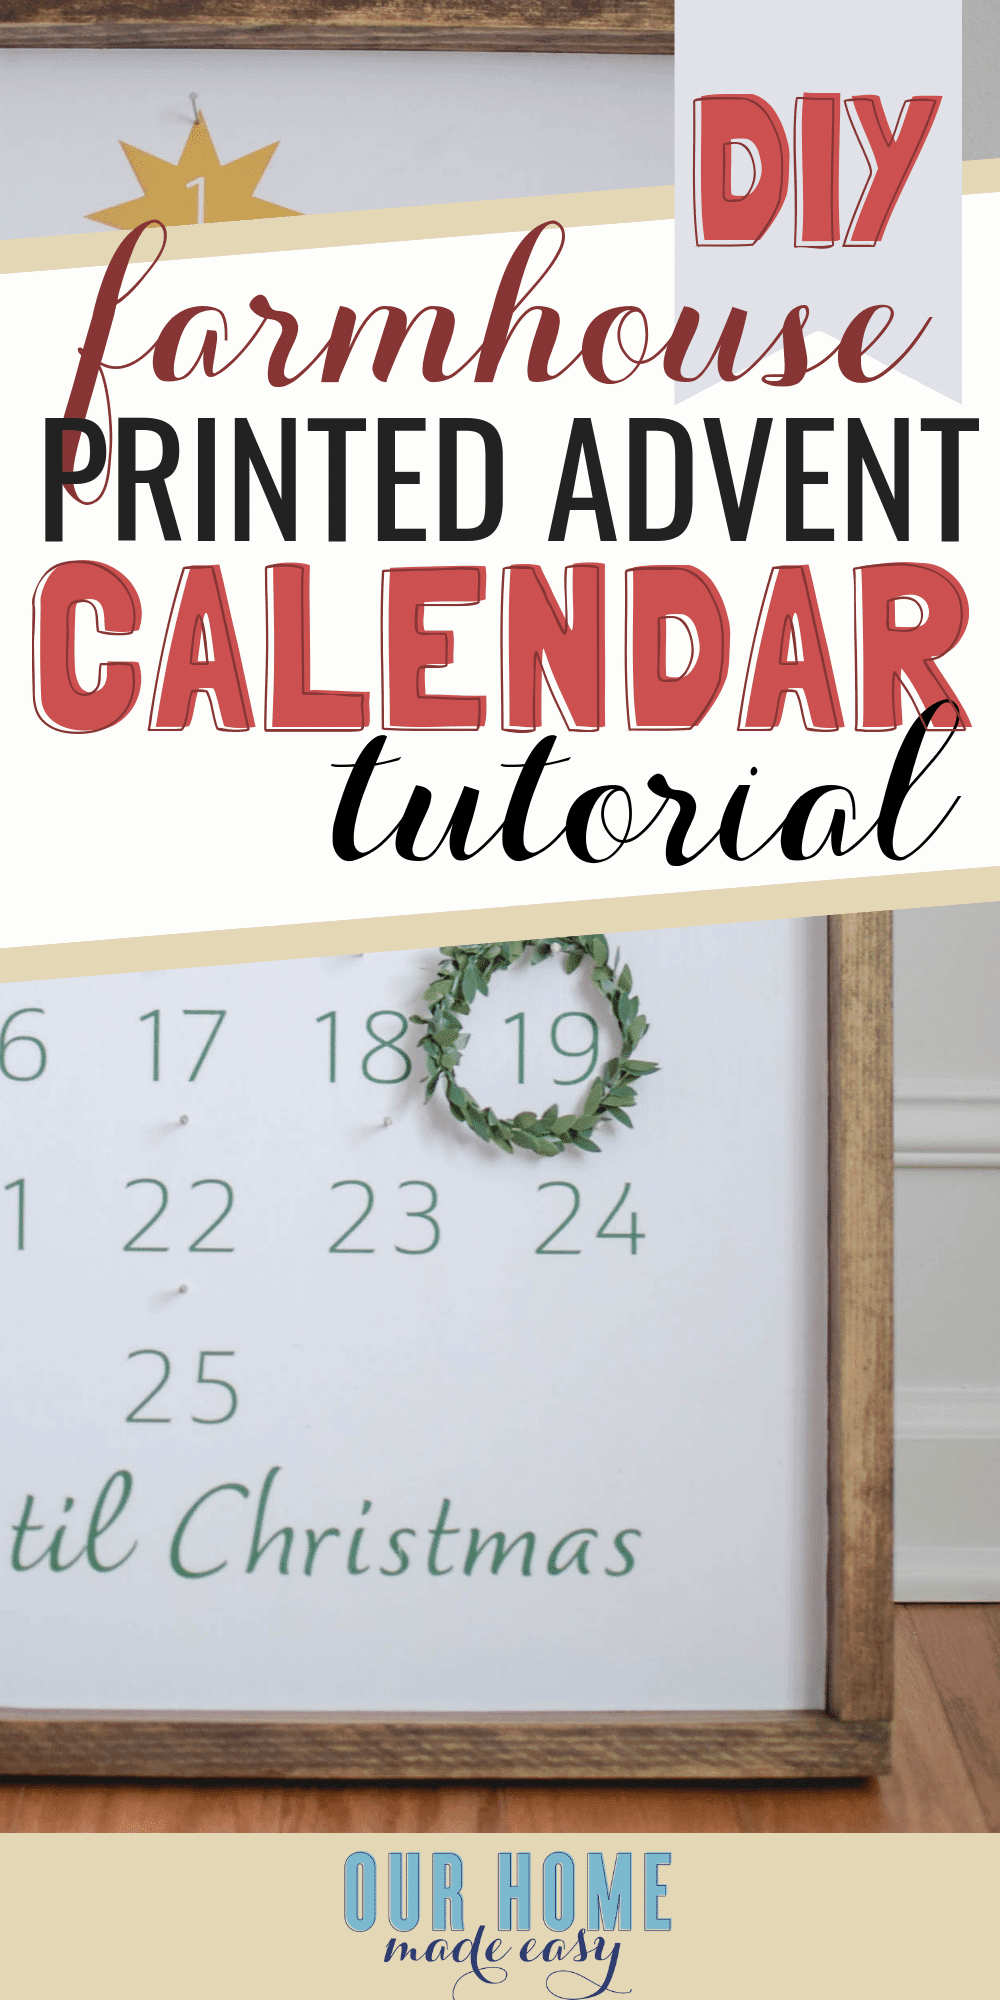 DIY Farmhouse advent calendar tutorial - how to make a simple wood advent calendar